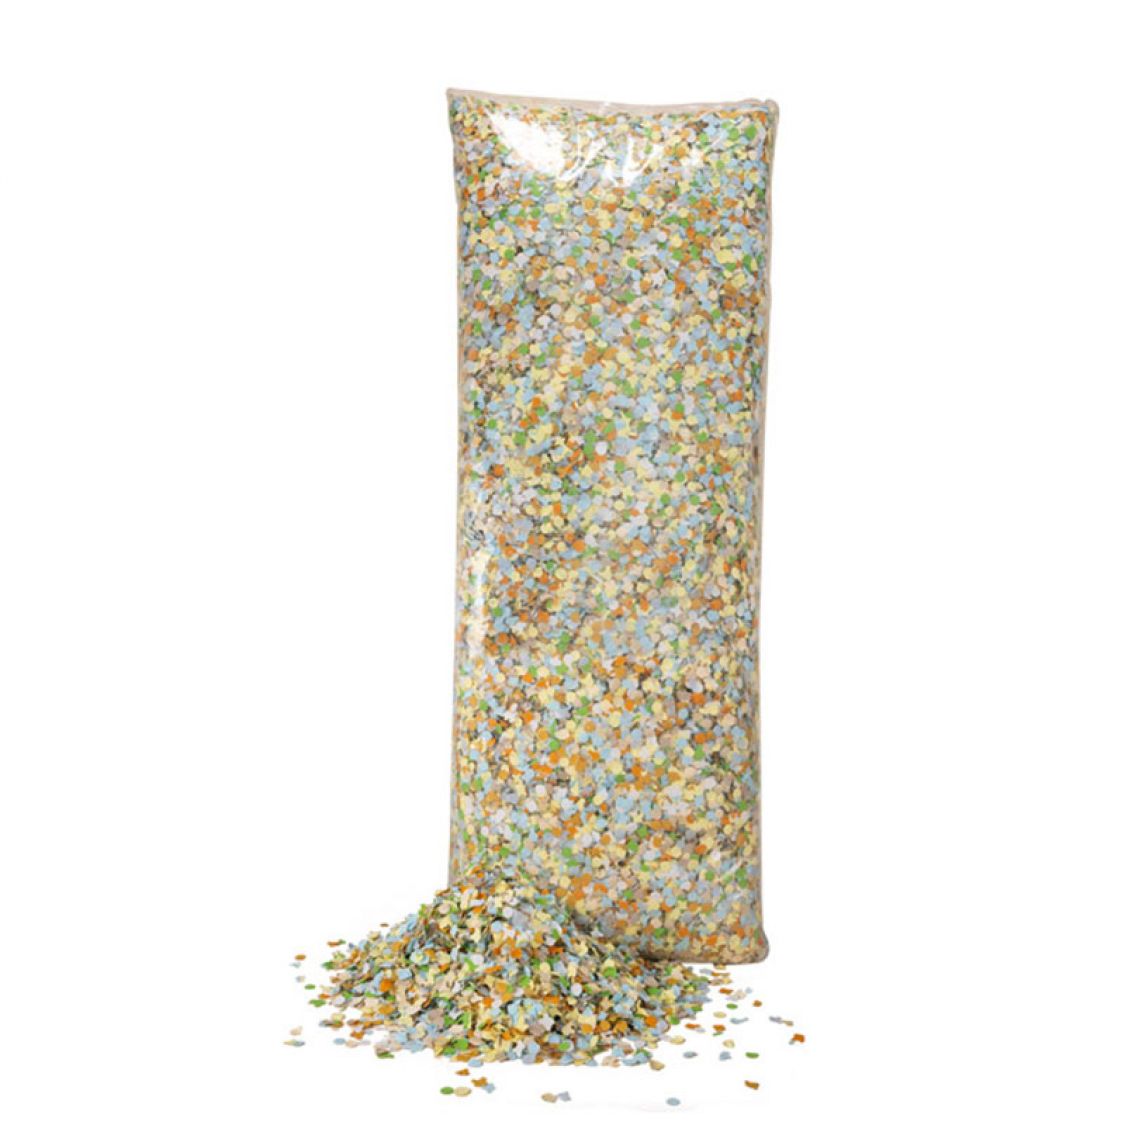 Confettis multicolores dépoussiérés luxe 1kg